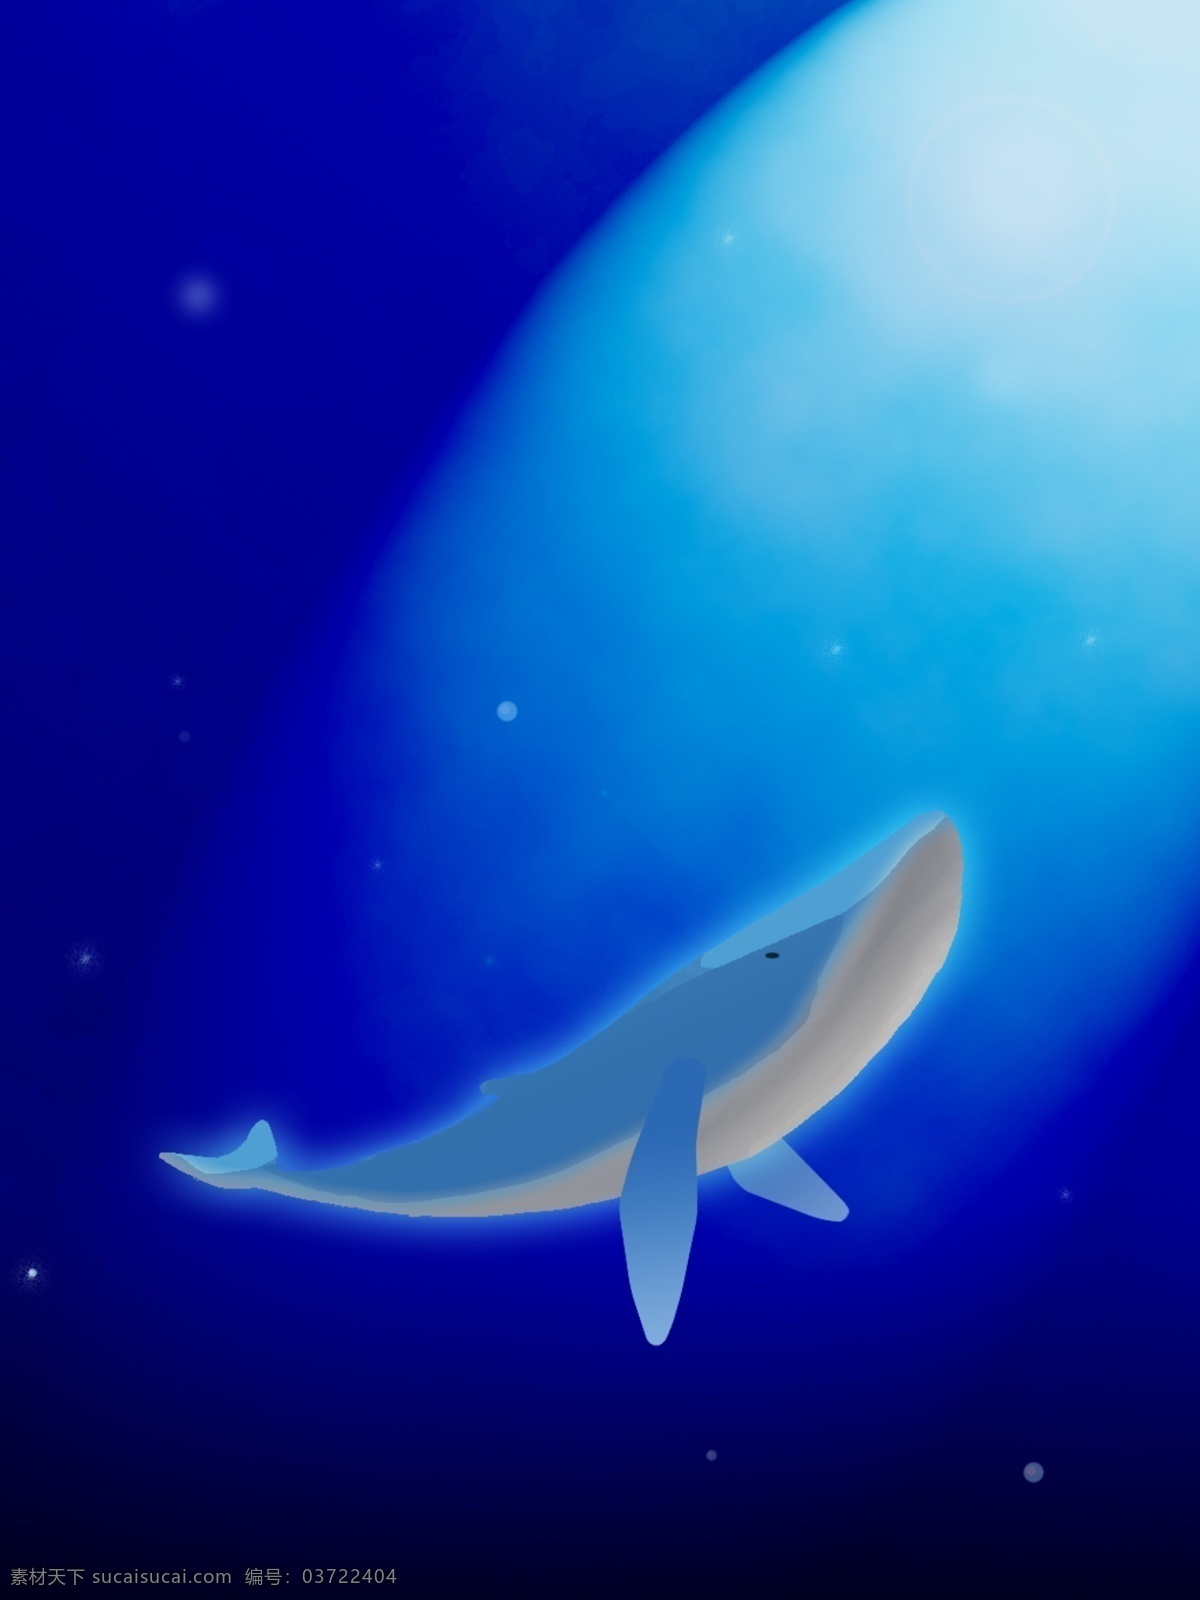 原创 手绘 深海 鲸鱼 意境 创意 背景 动物 小清新